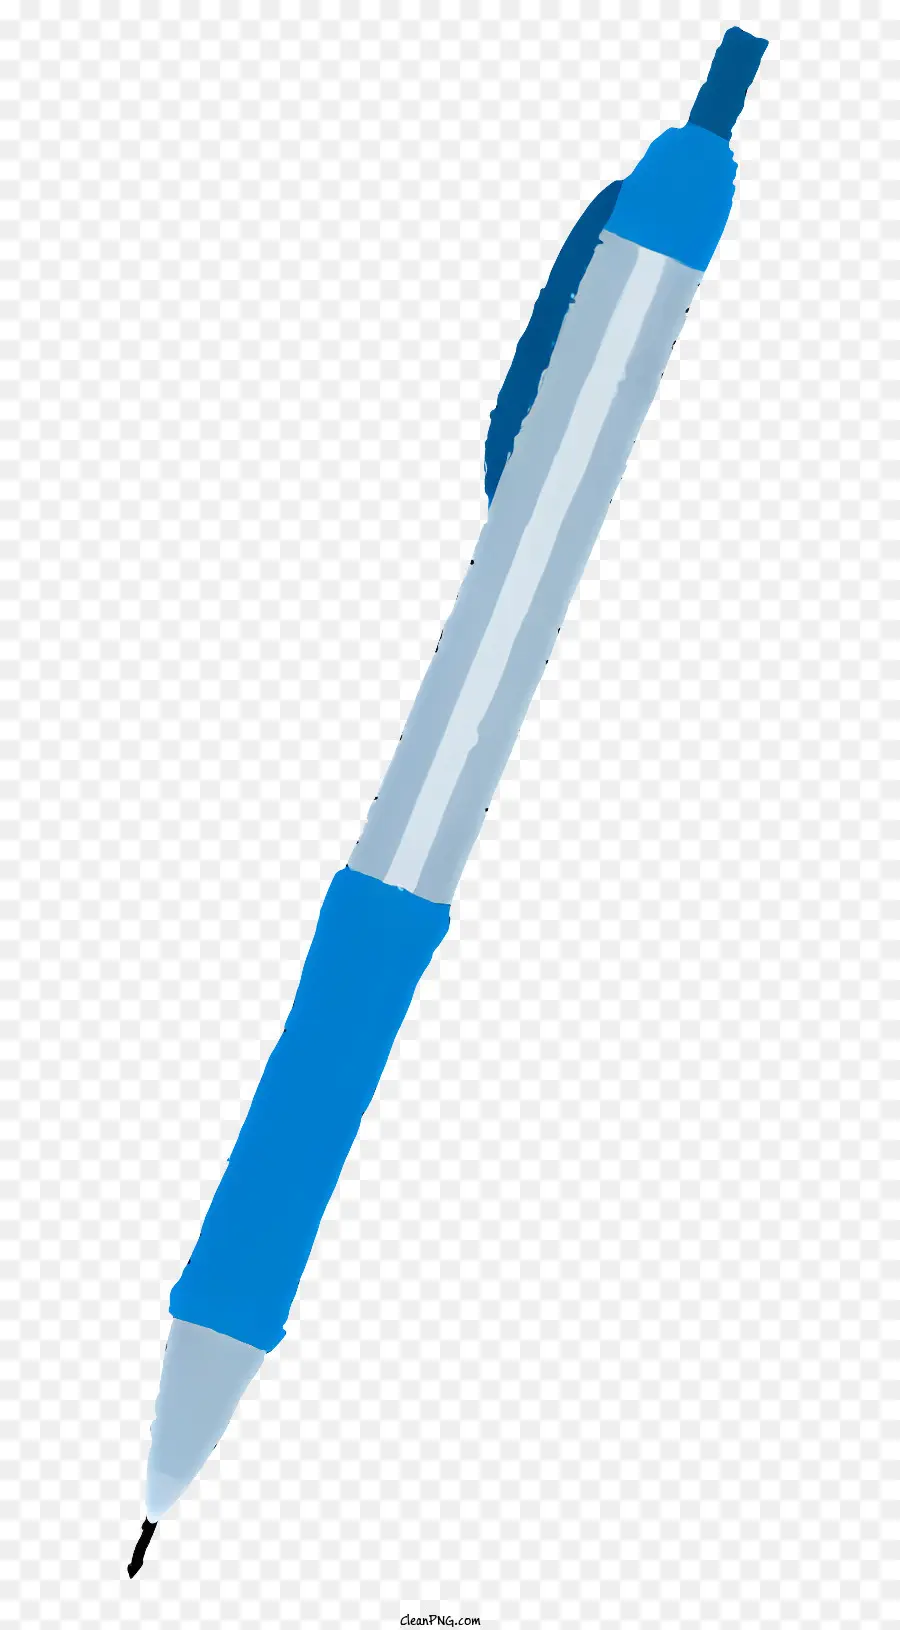 weißen hintergrund - Niedrigauflösendes Bild eines glänzenden blauen Stifts mit klarer Spitze